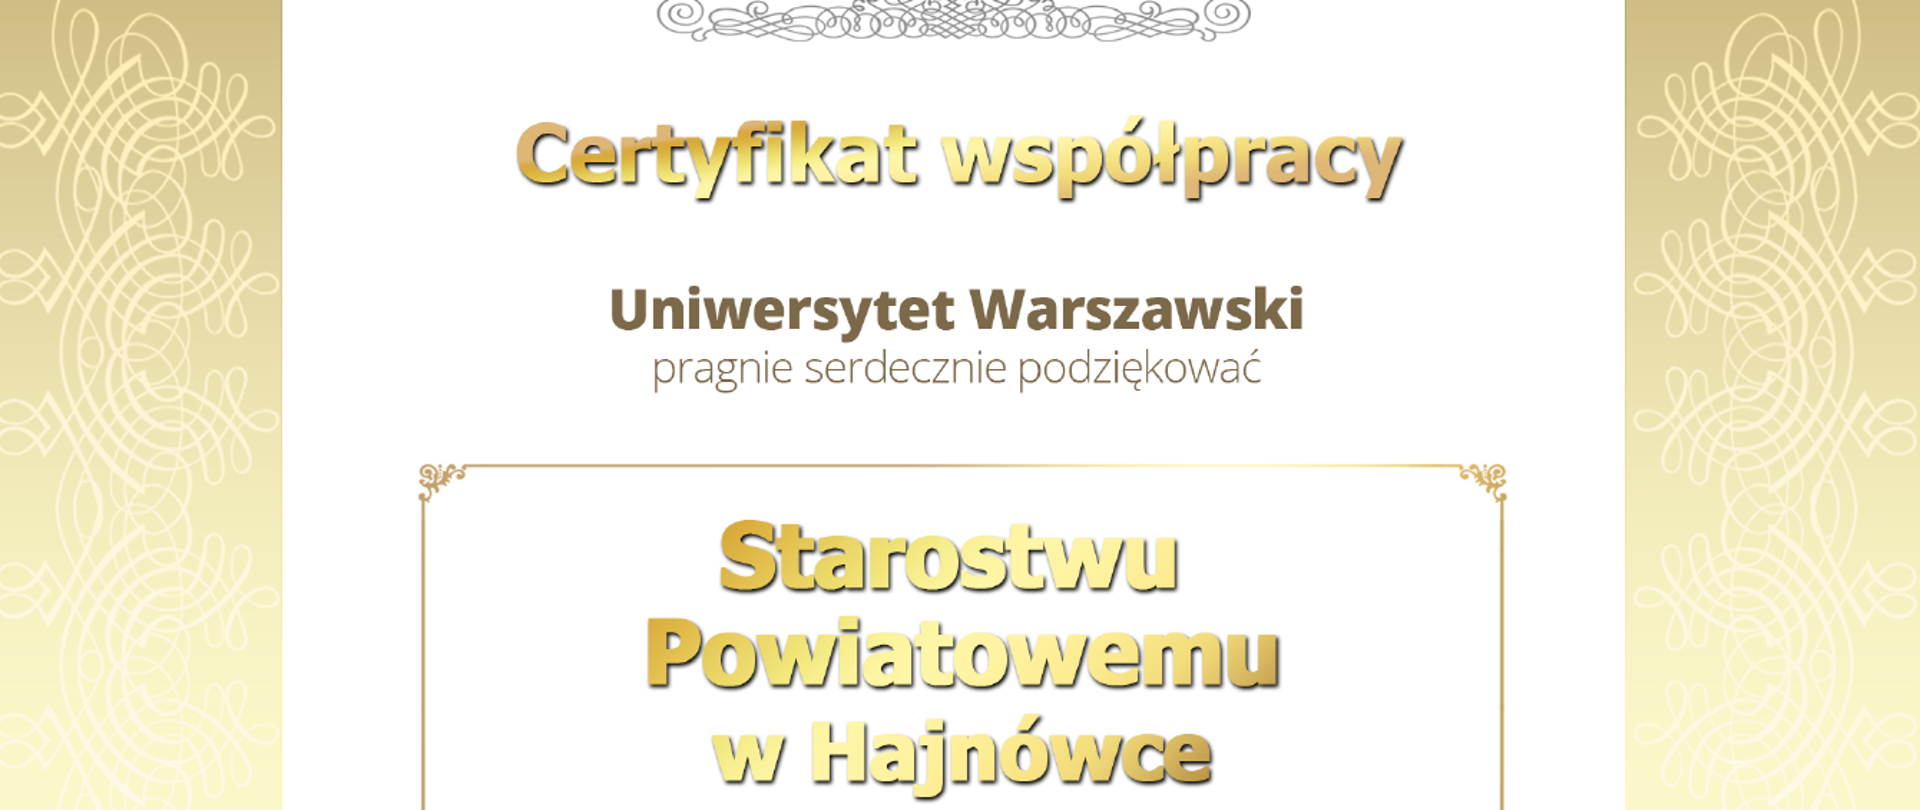 Certyfikat Współpracy Uniwersytet Warszawski pragnie serdecznie podziękować Starostwu Powiatowemu w Hajnówce